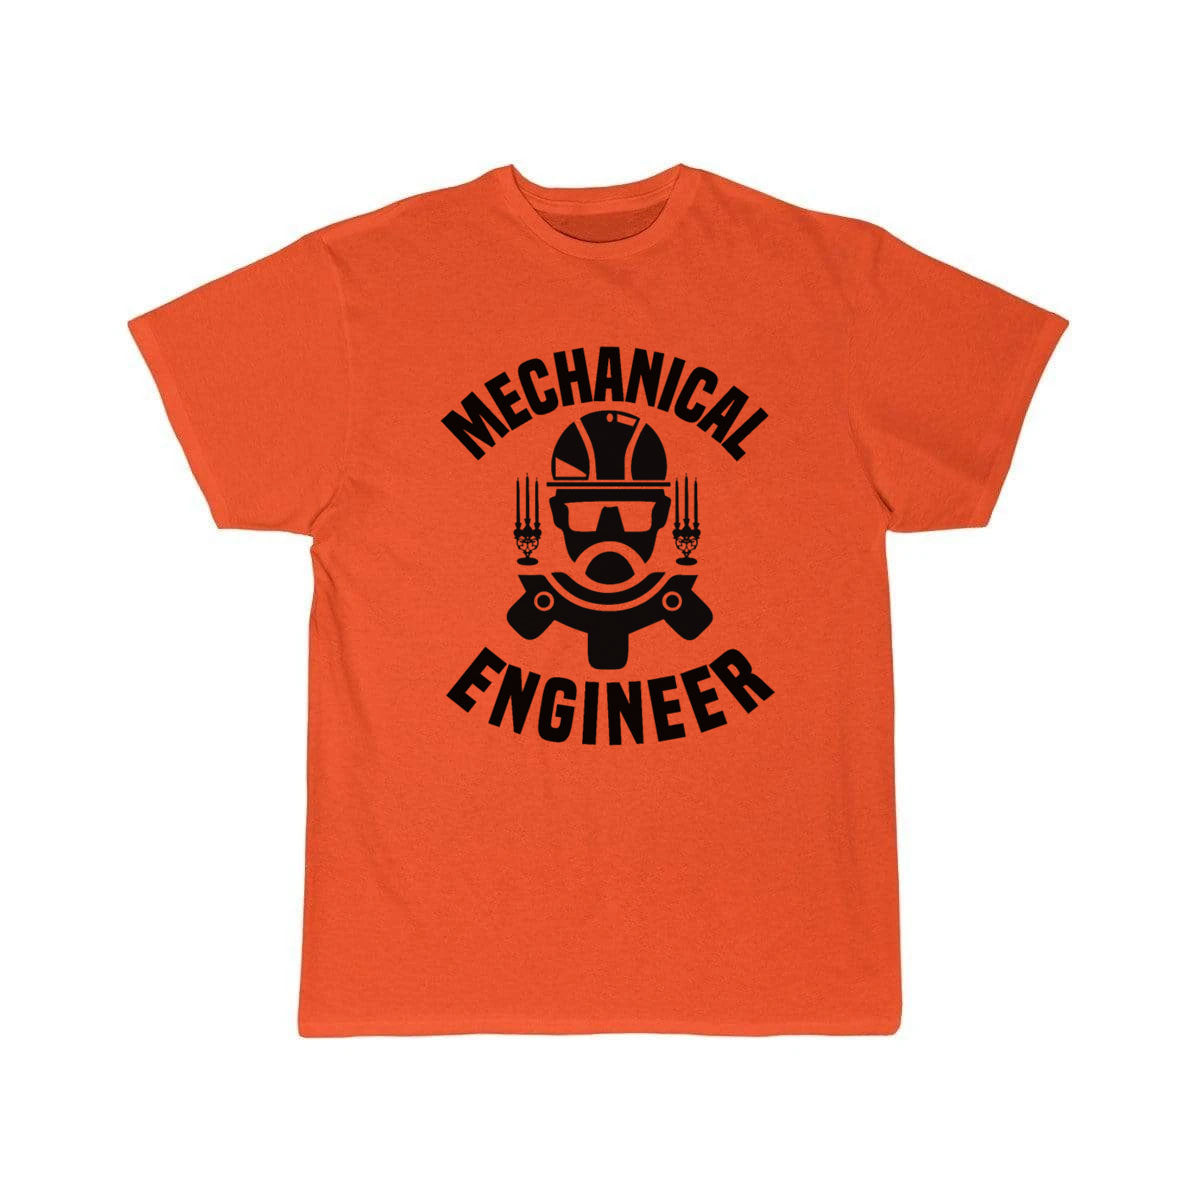 Mechanical Engineer T-Shirt THE AV8R